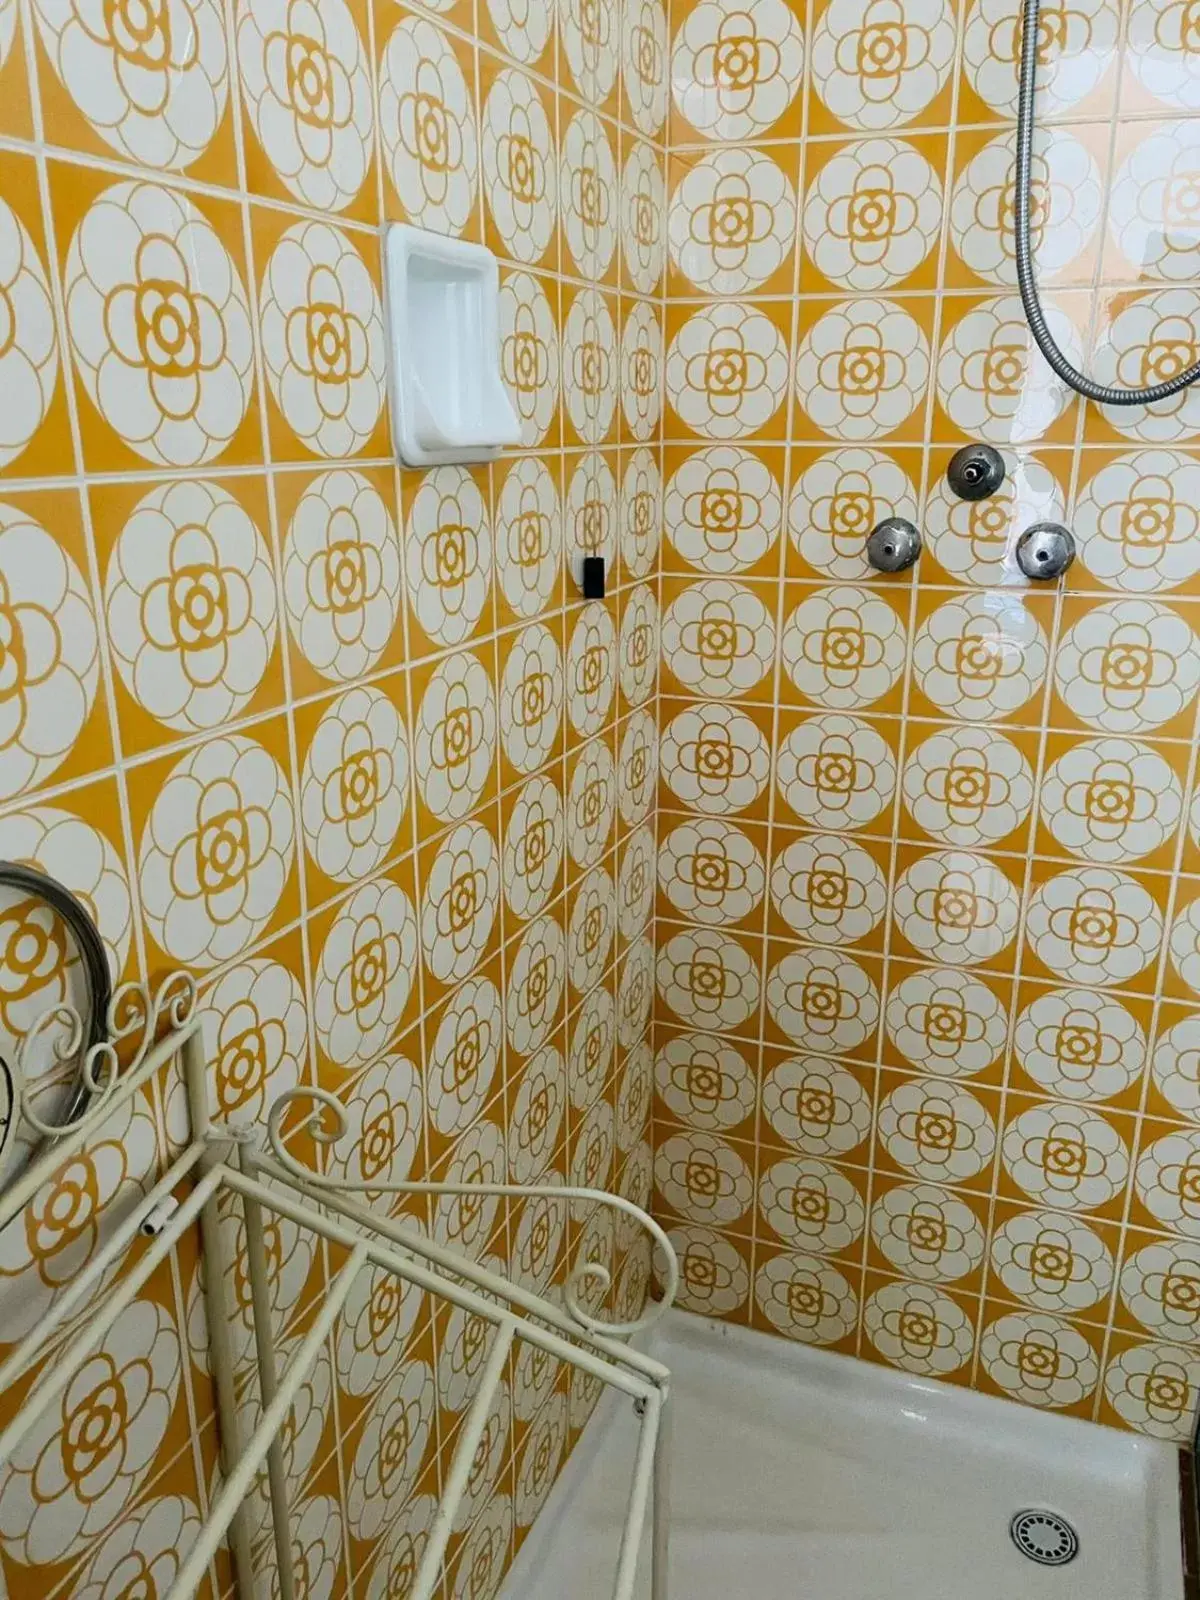 Bathroom in Hotel Mirabeau